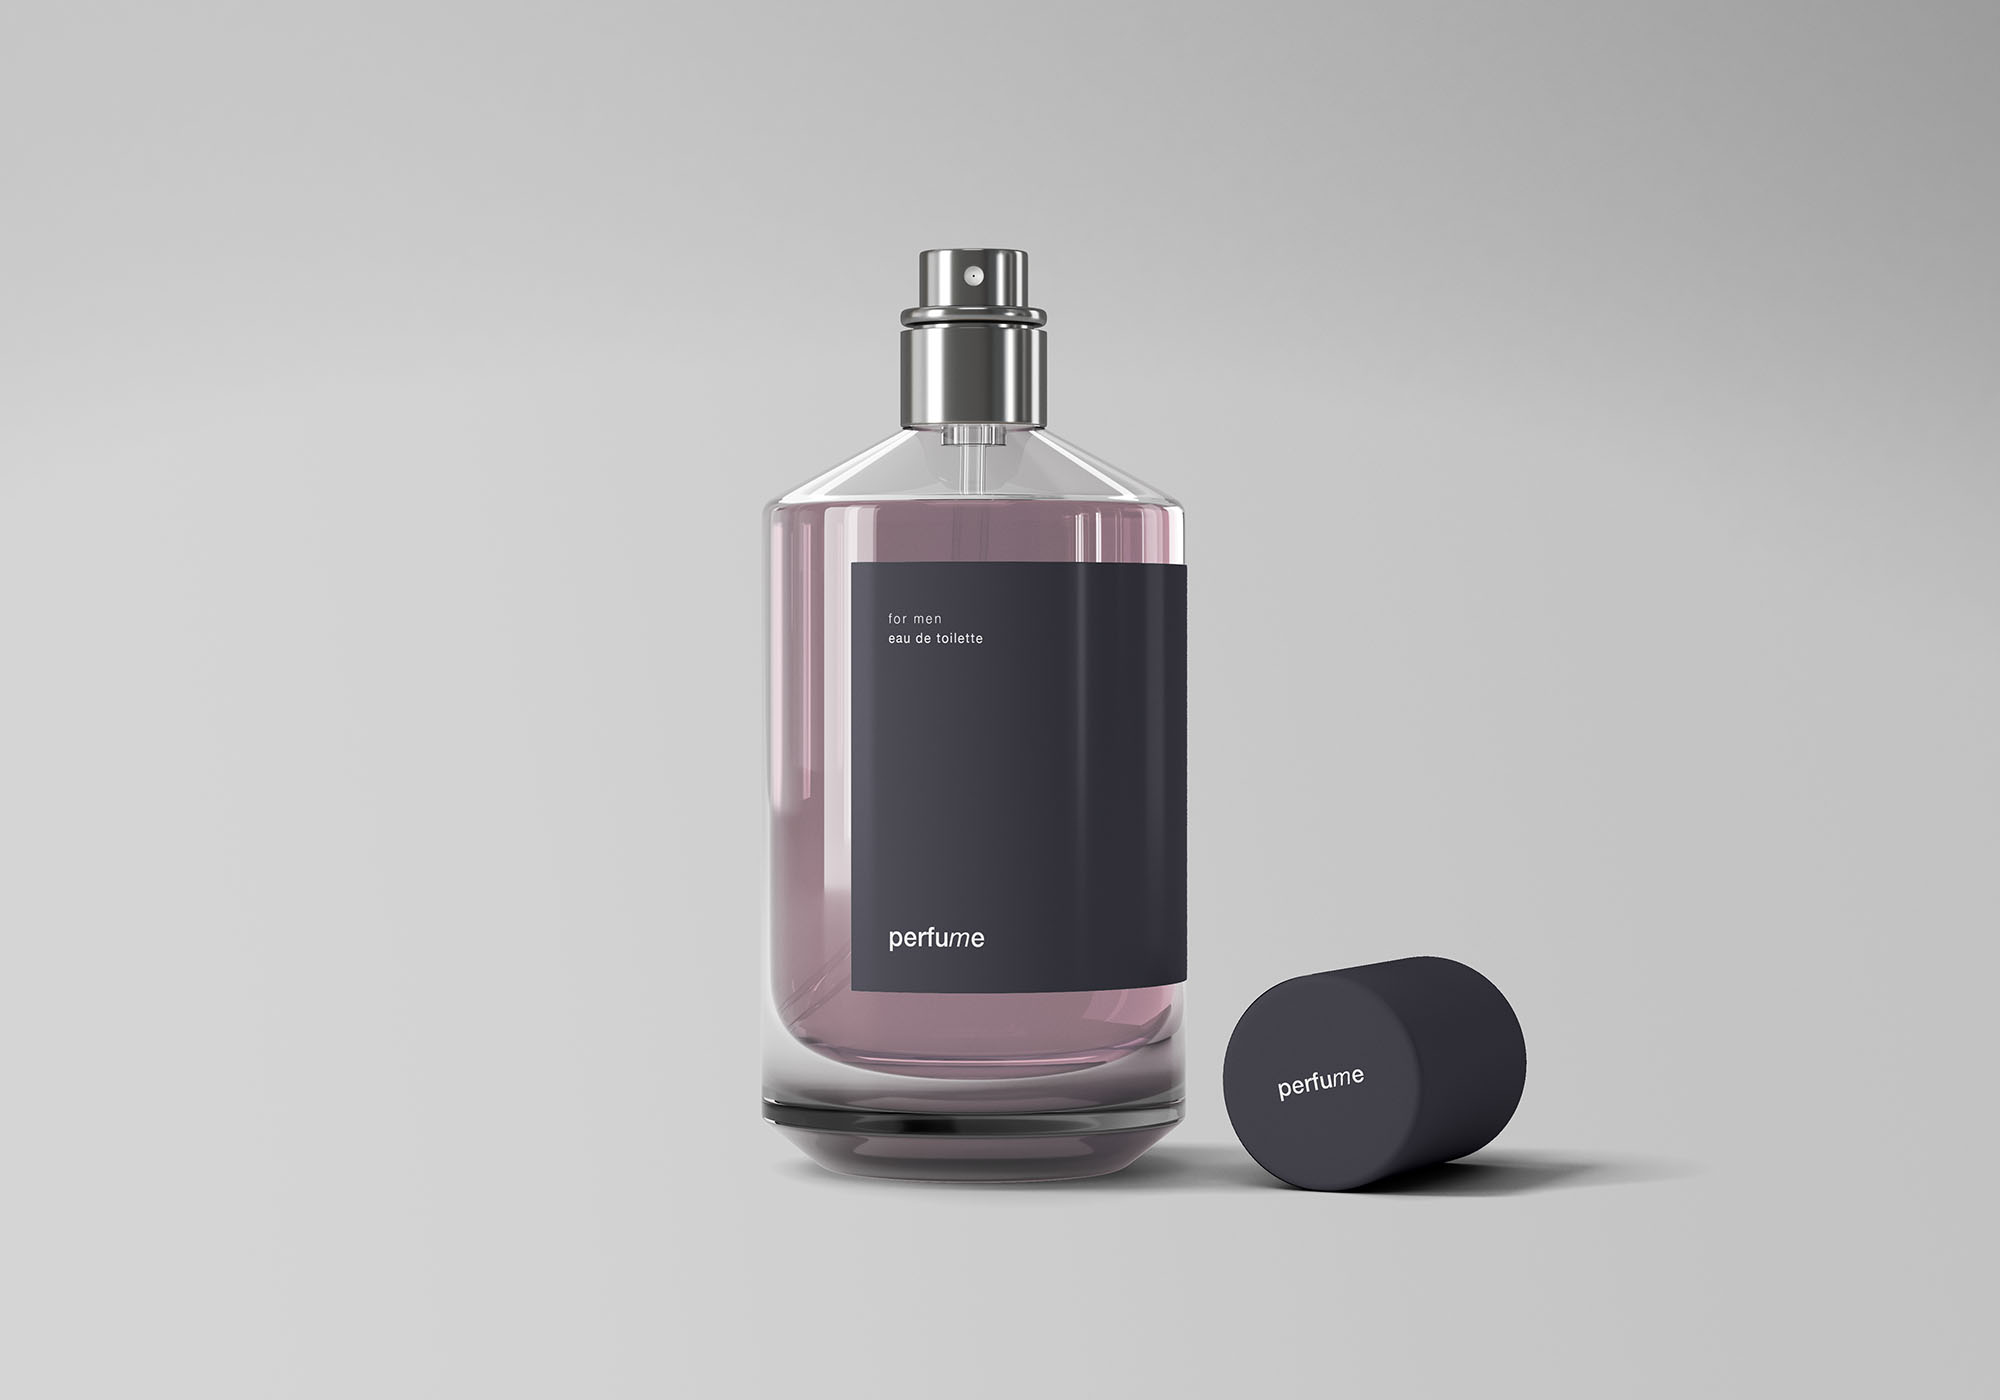 经典香水瓶产品外观设计展示非凡图库精选 Classic Perfume Mockup插图